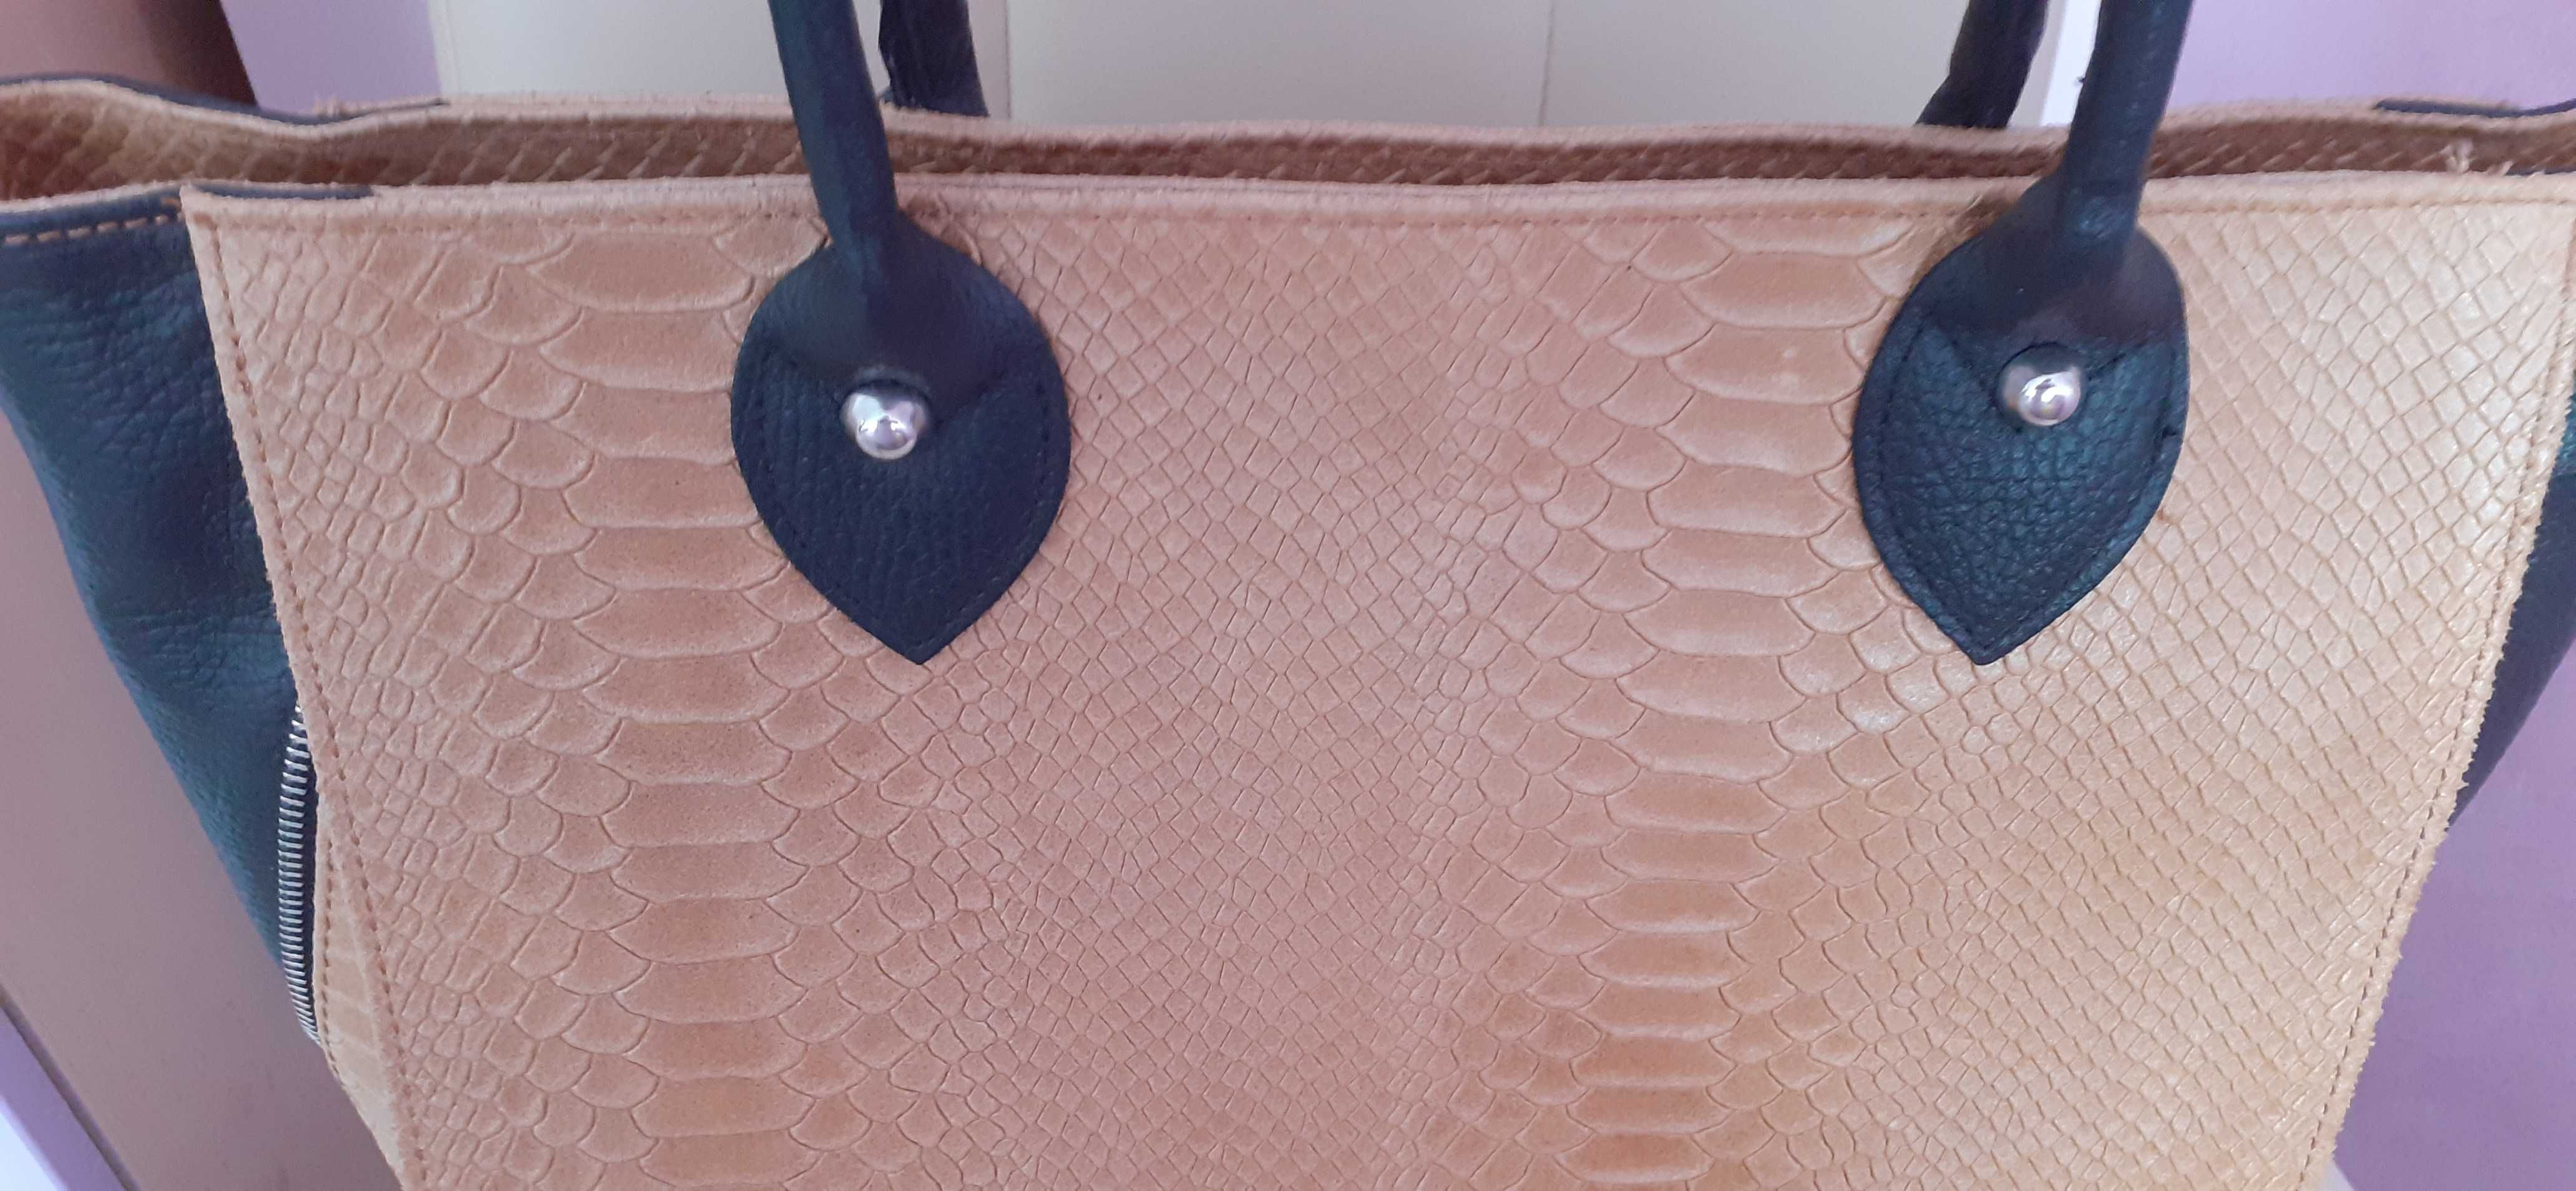 Дамска чанта от естествена кожа